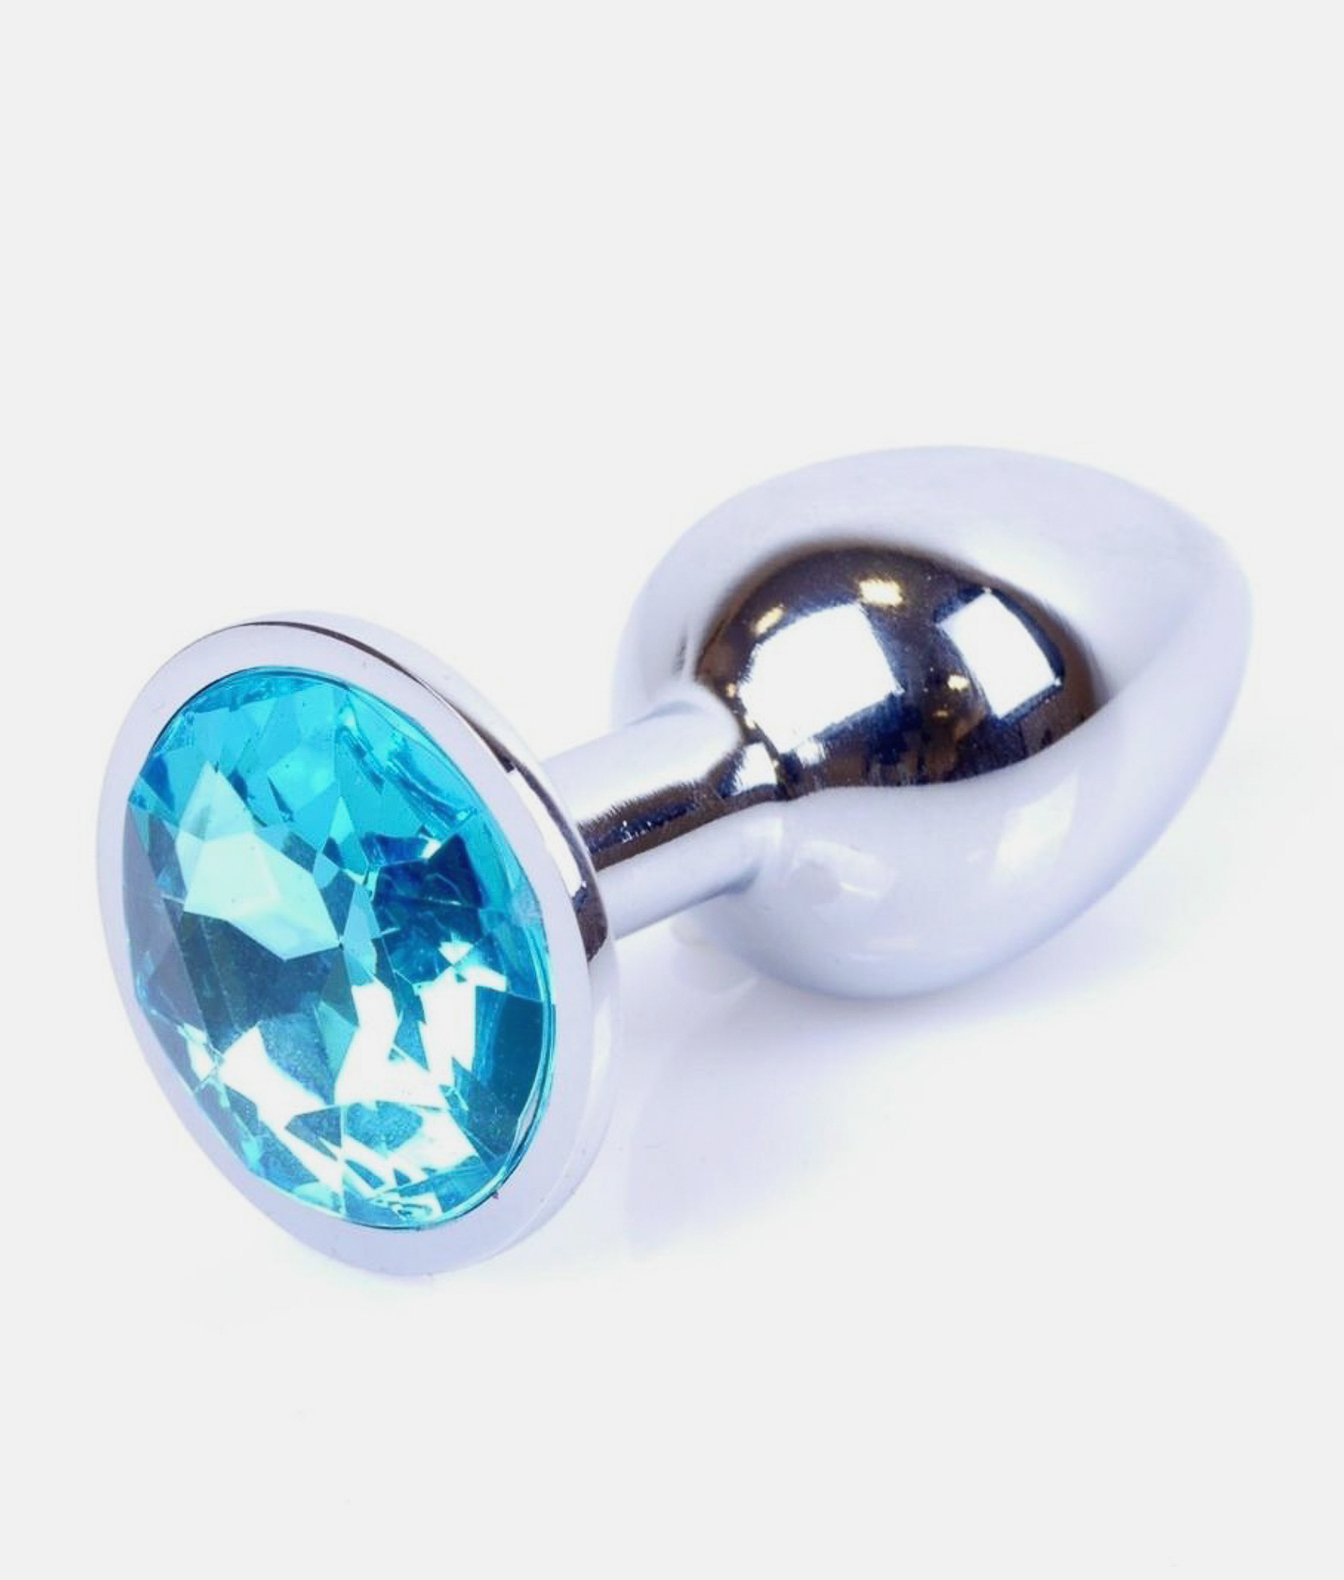 Korek analny z kryształkiem Silver plug